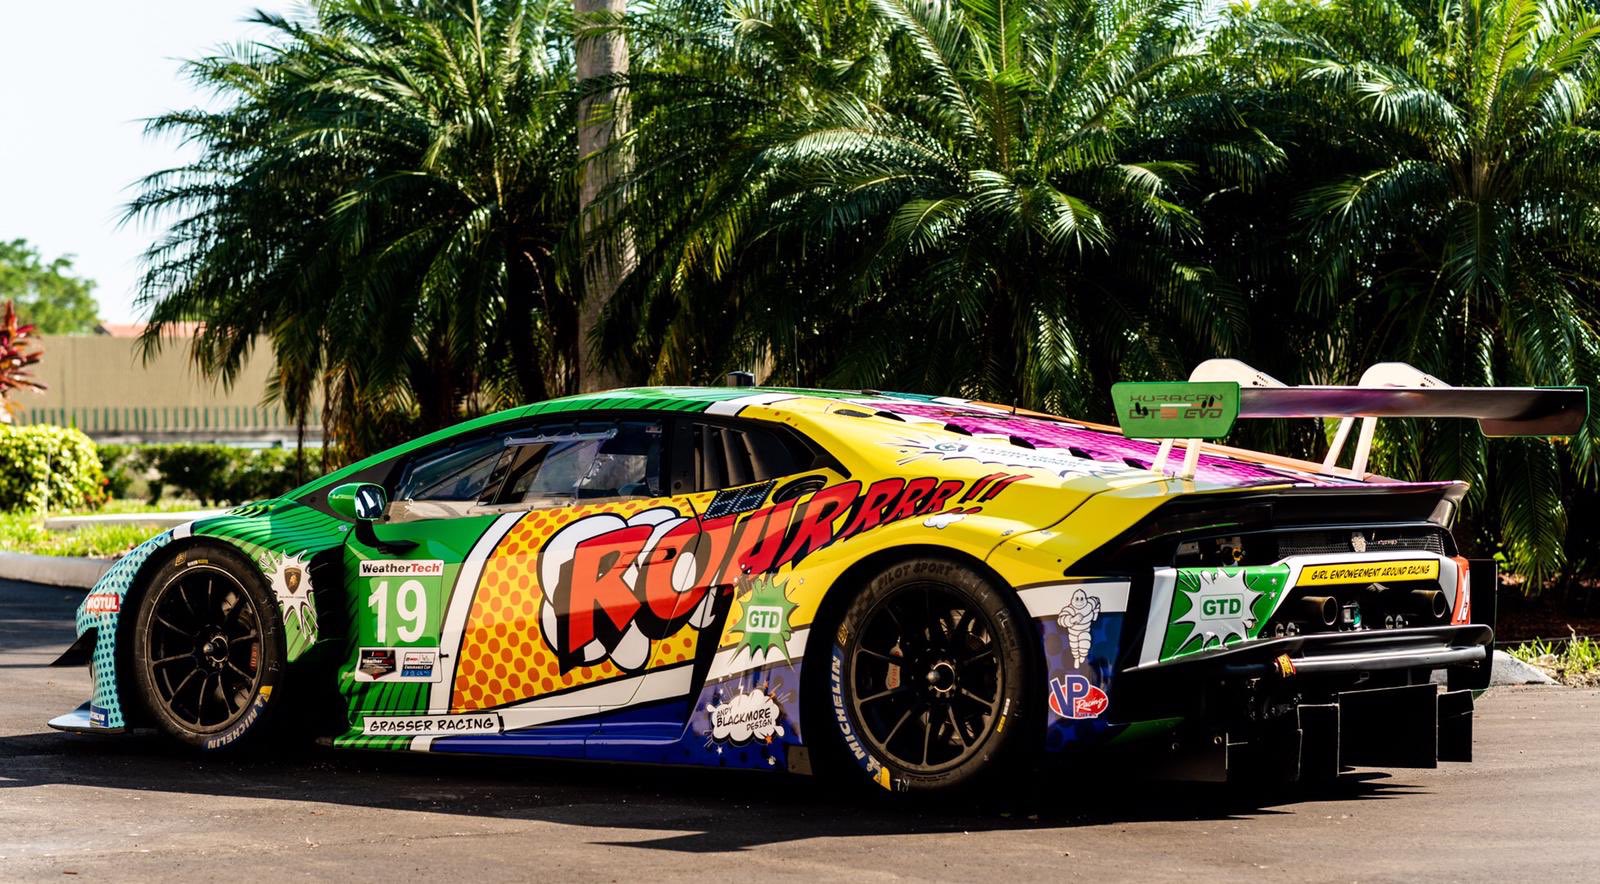 GEAR Racing com pintura HQ para Daytona